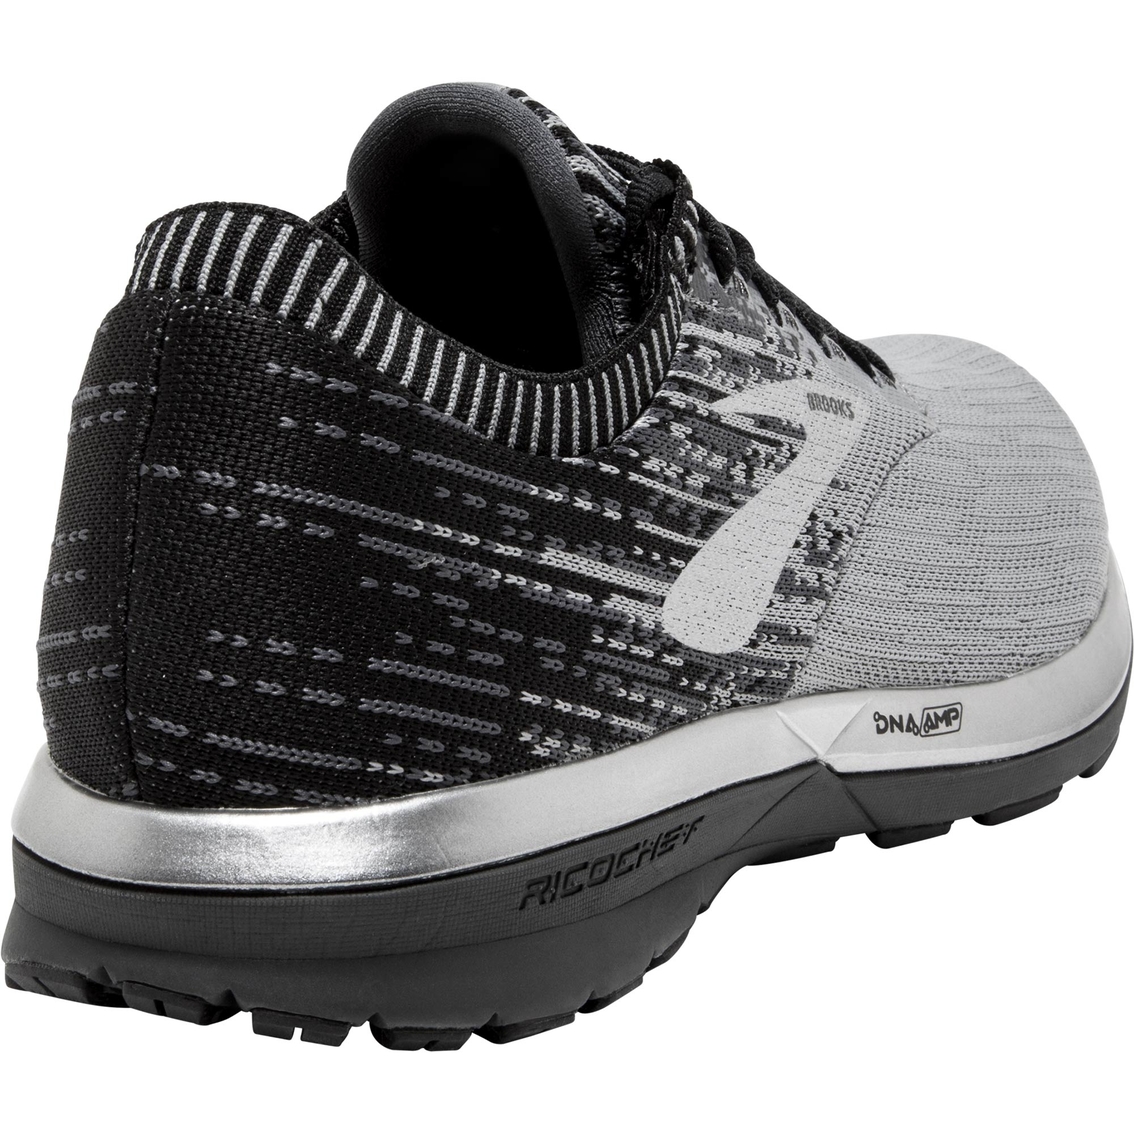 Brooks Men's Ricochet Running Shoes - Image 4 of 4